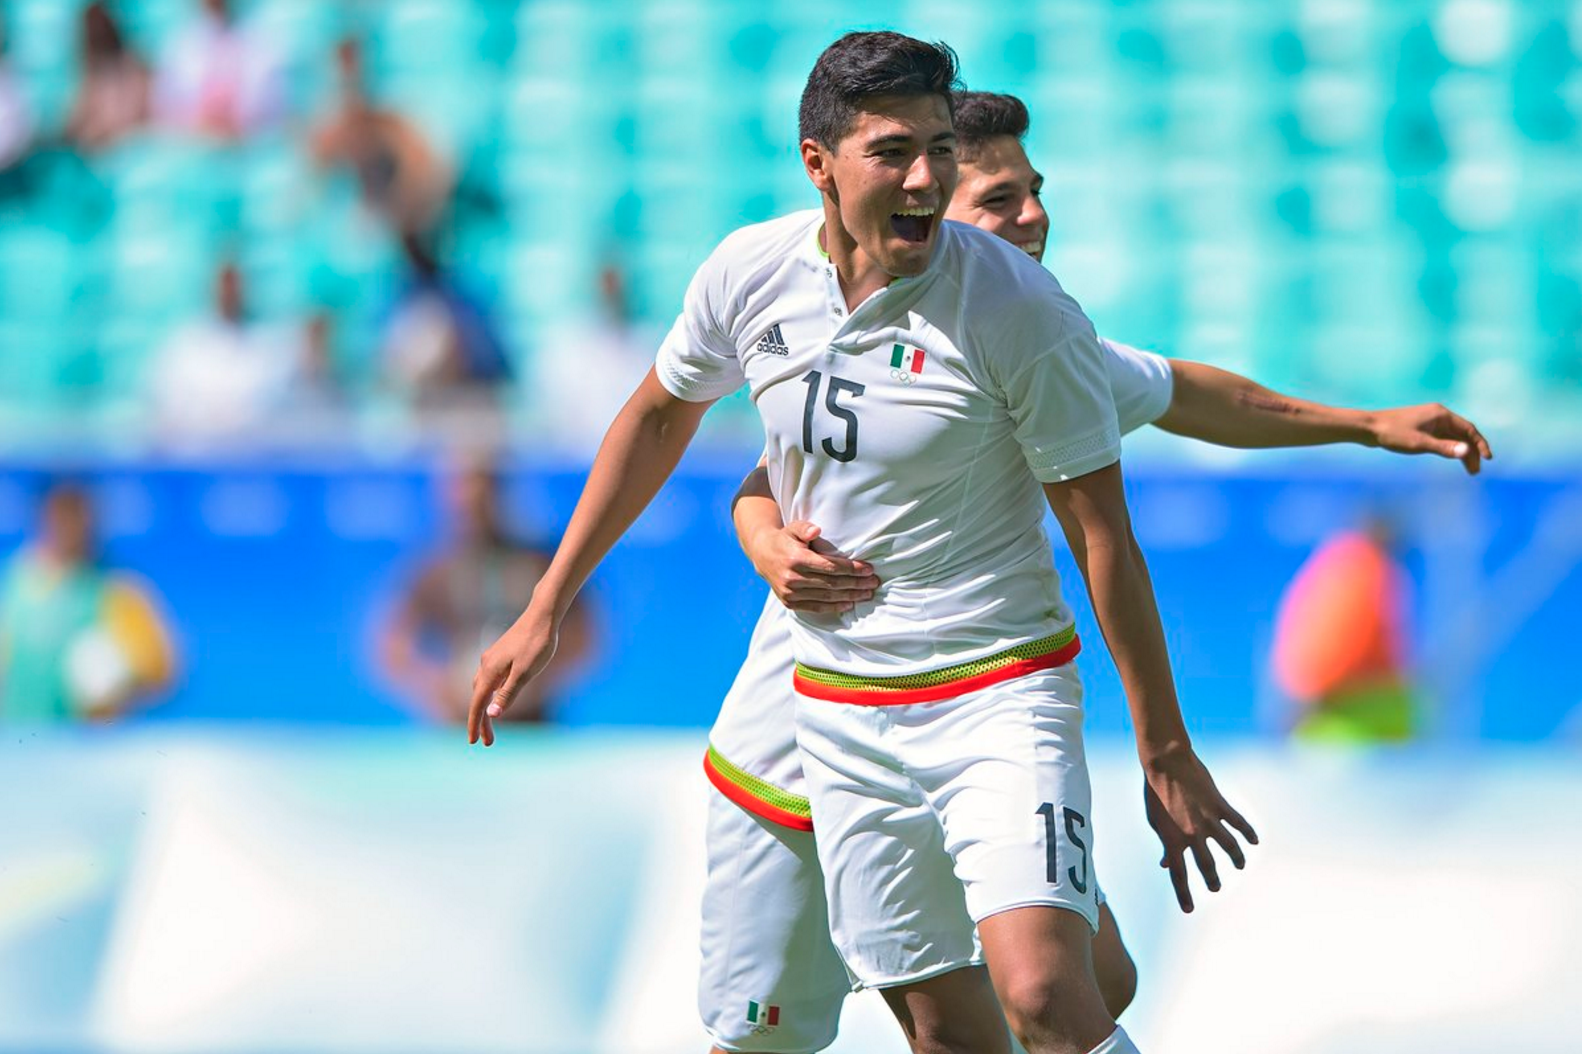  Rio 2016: México vence a Fiji en futbol; el equipo de tiro con arco es eliminado en cuartos de final